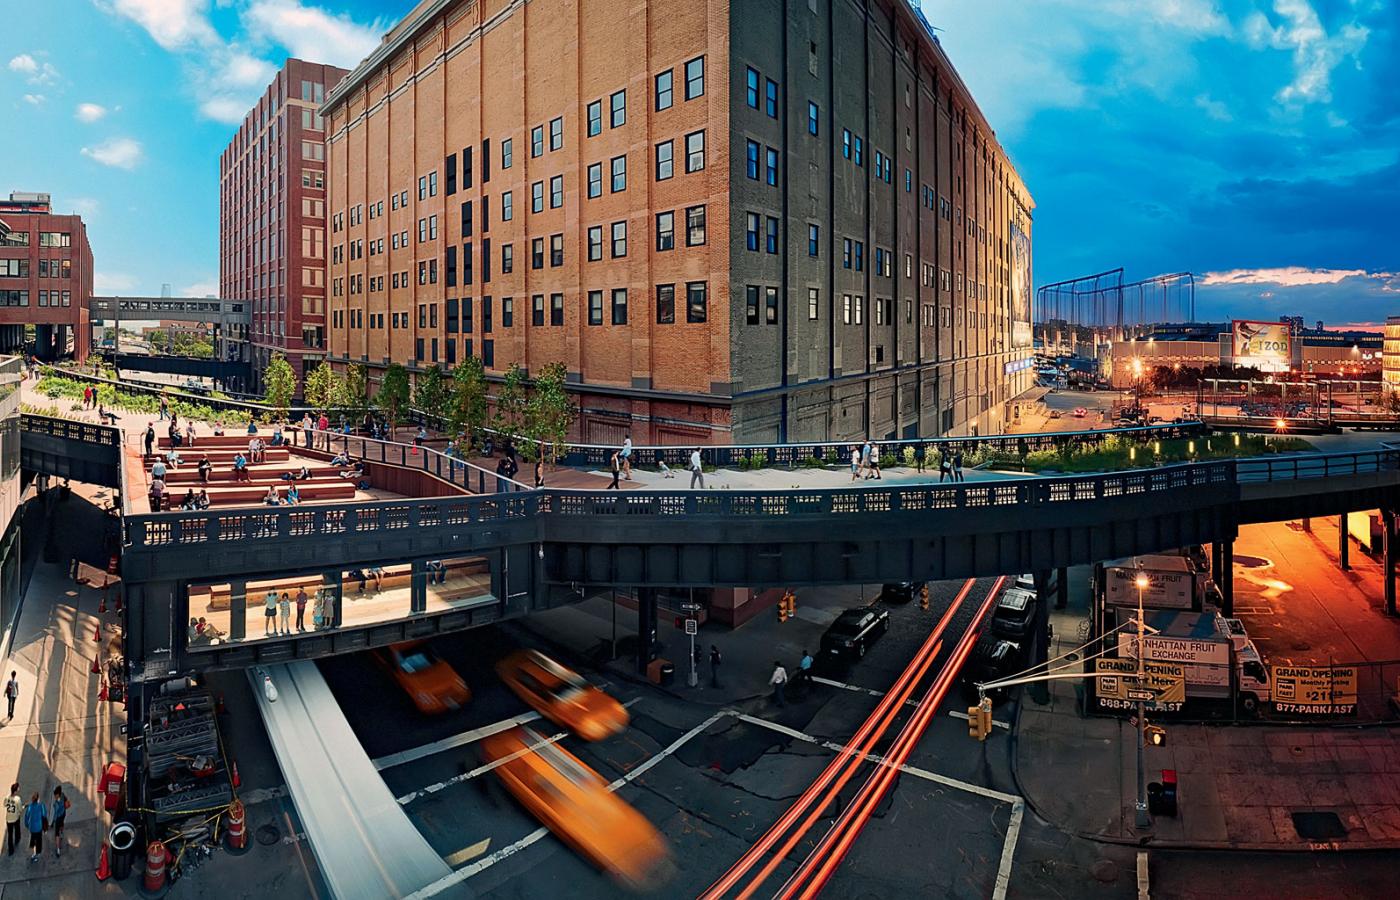 Park High Line – zielona promenada urządzona na opuszczonym wiadukcie kolejowym. Rewitalizacja kosztowała 75 mln dol.